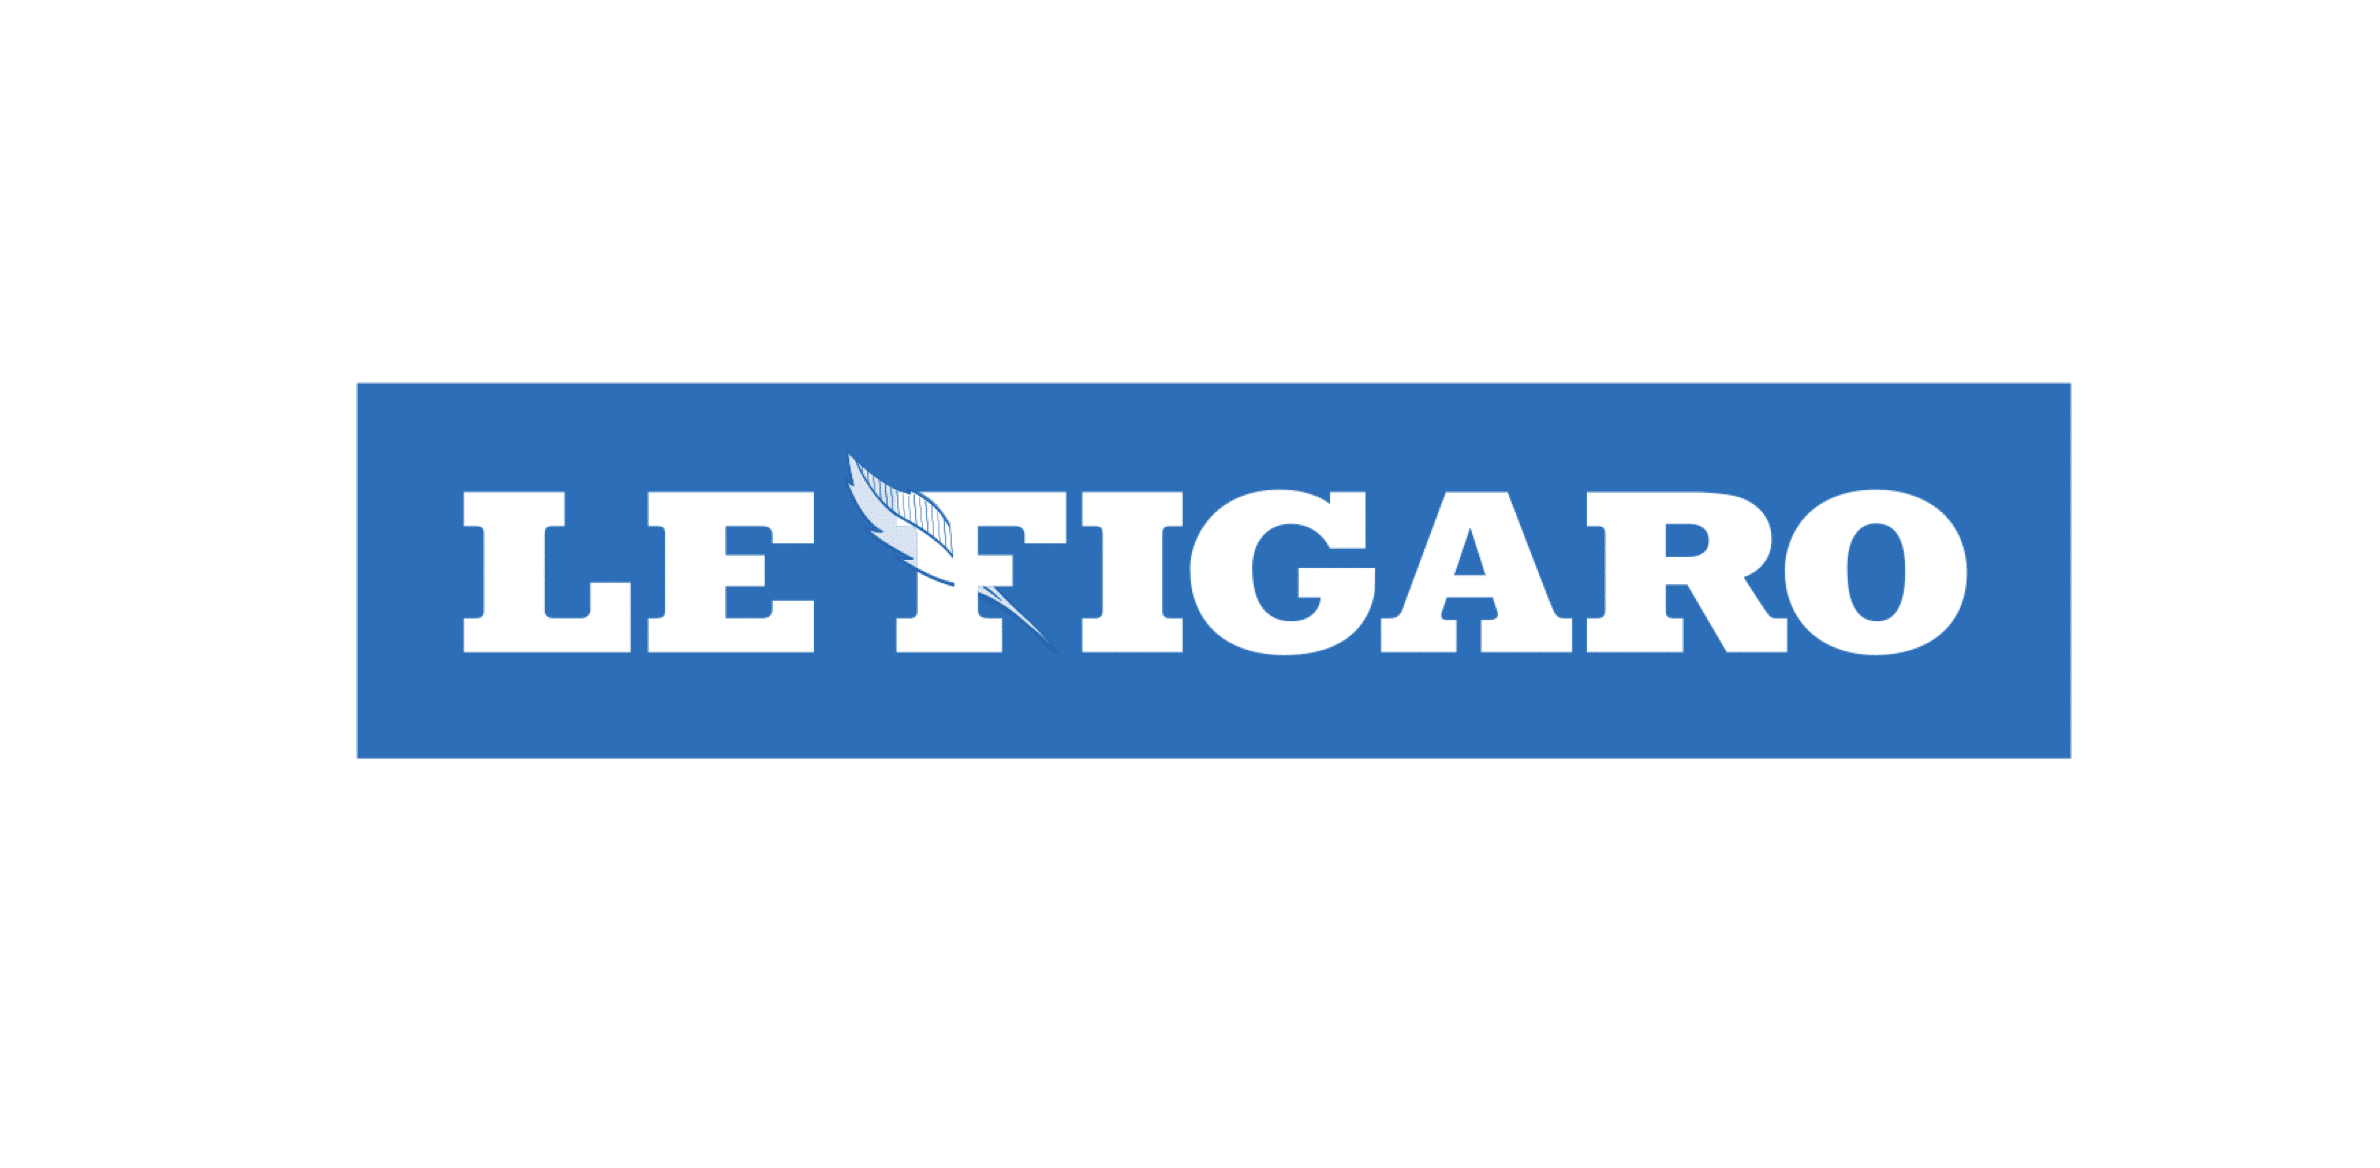 Voulez-vous contacter le service client du journal Le Figaro ?
 - Contacter le journal LE FIGARO | Écrire à la rédaction #LeFigaro